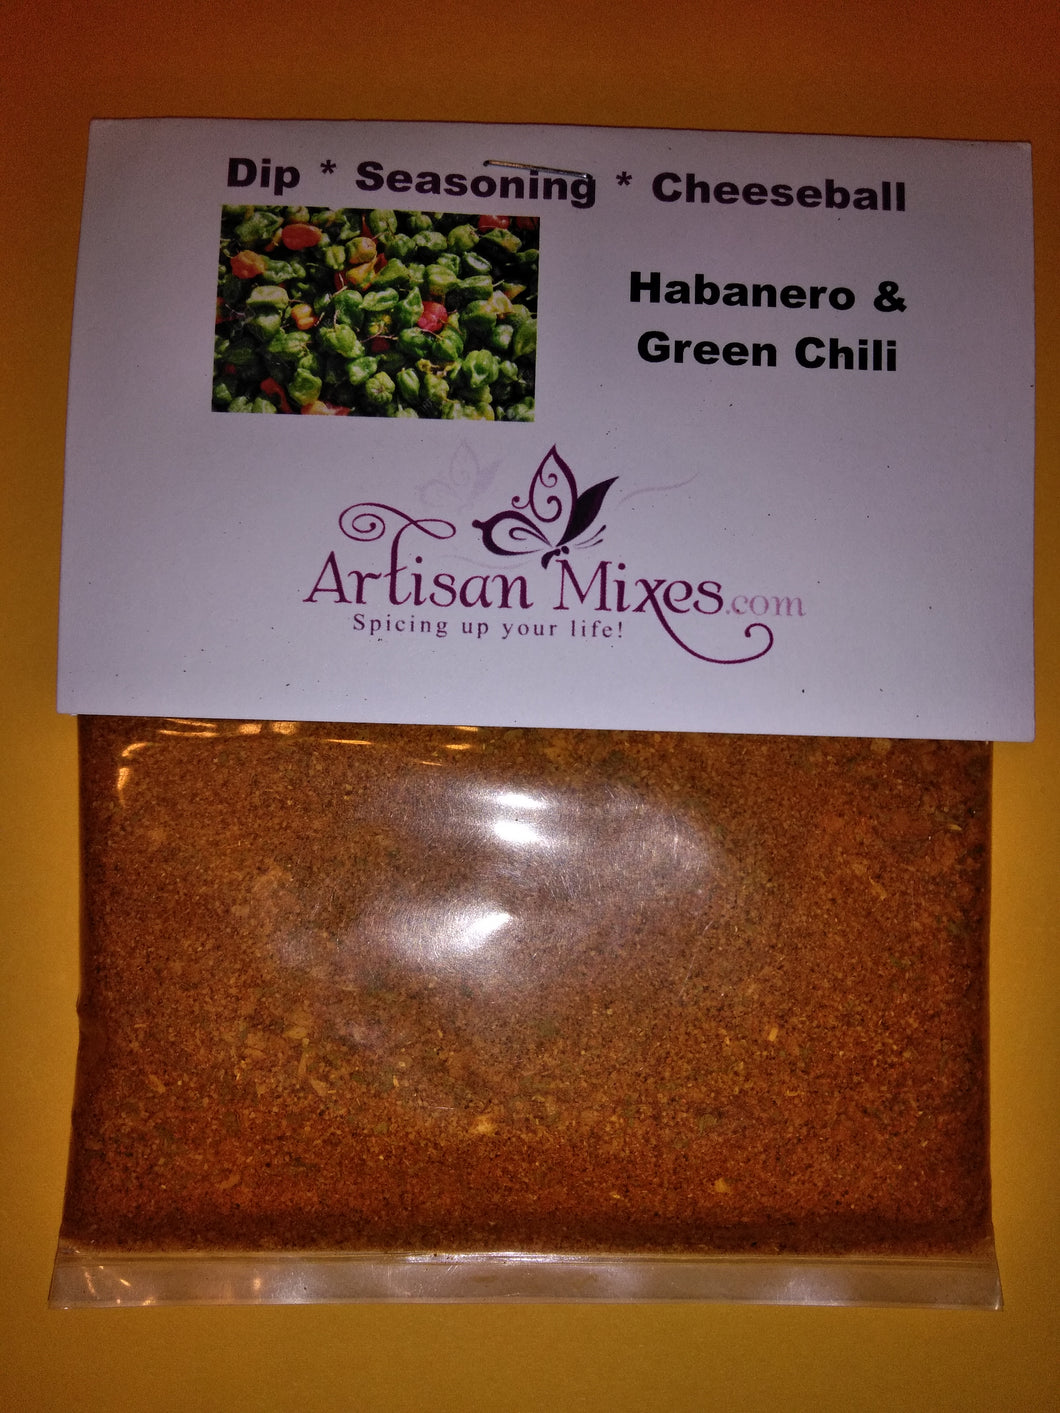 Habanero and Green Chili